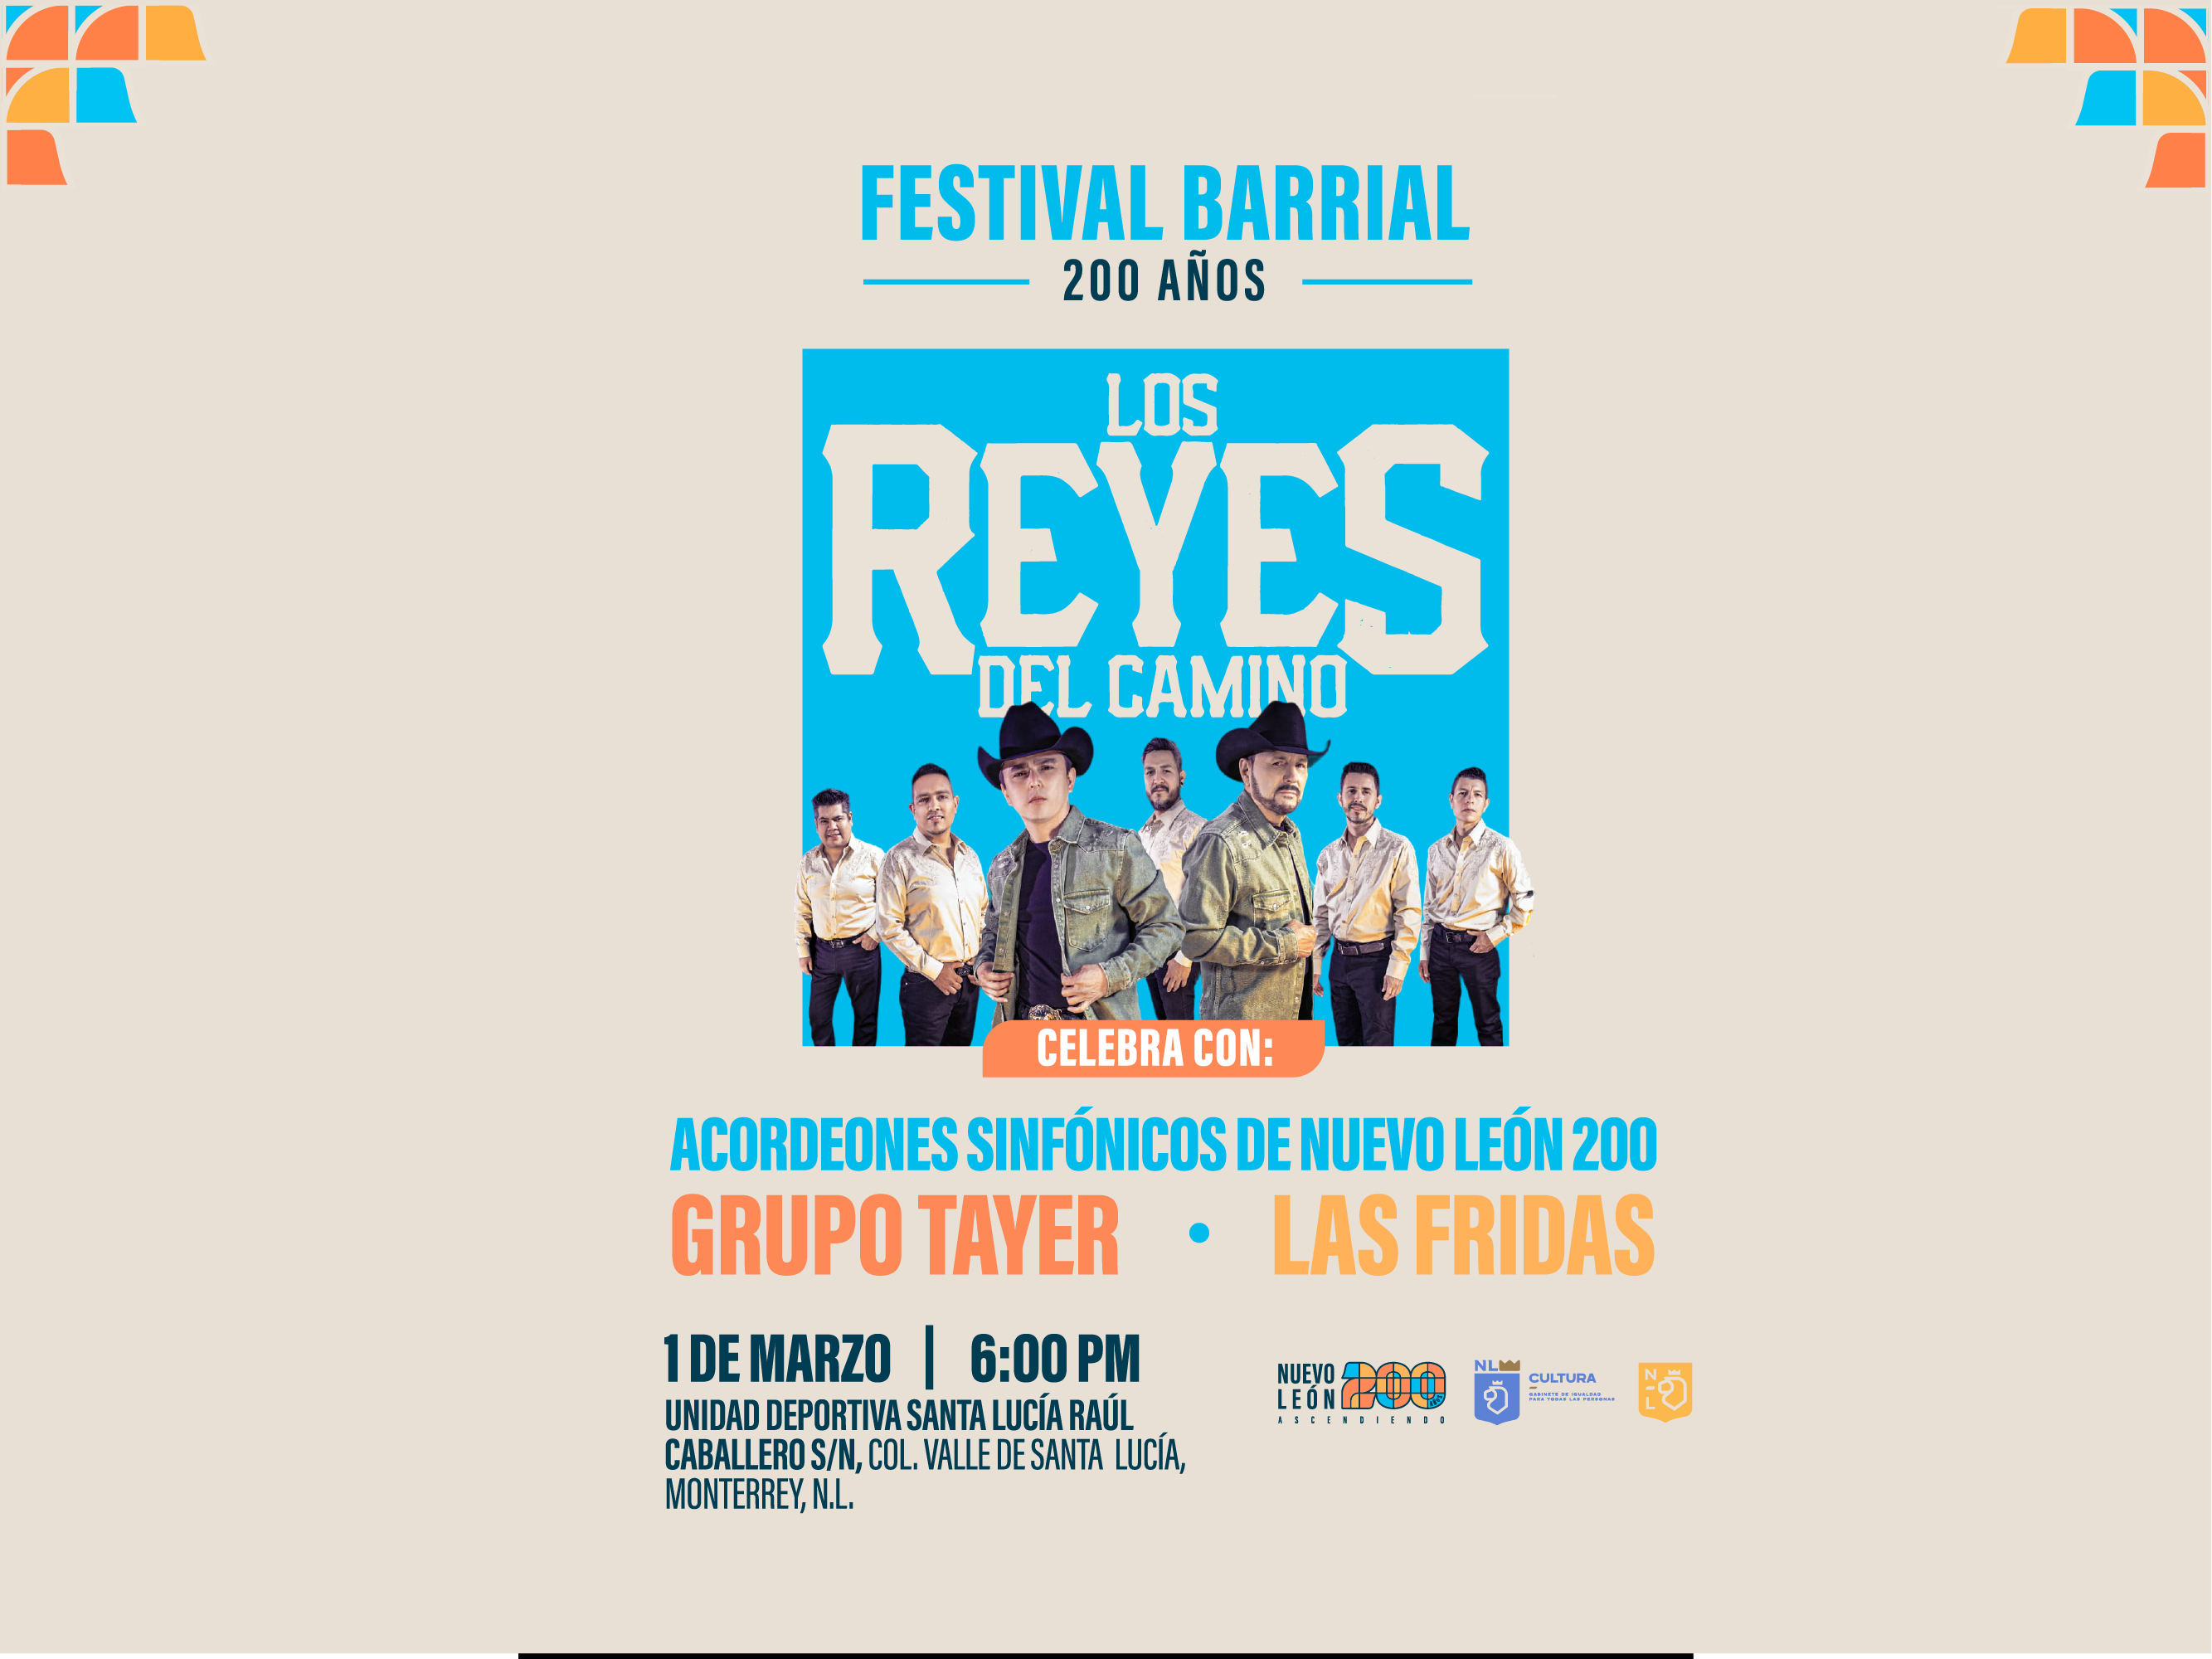 Festival Barrial 200 años (Los Reyes del Camino)